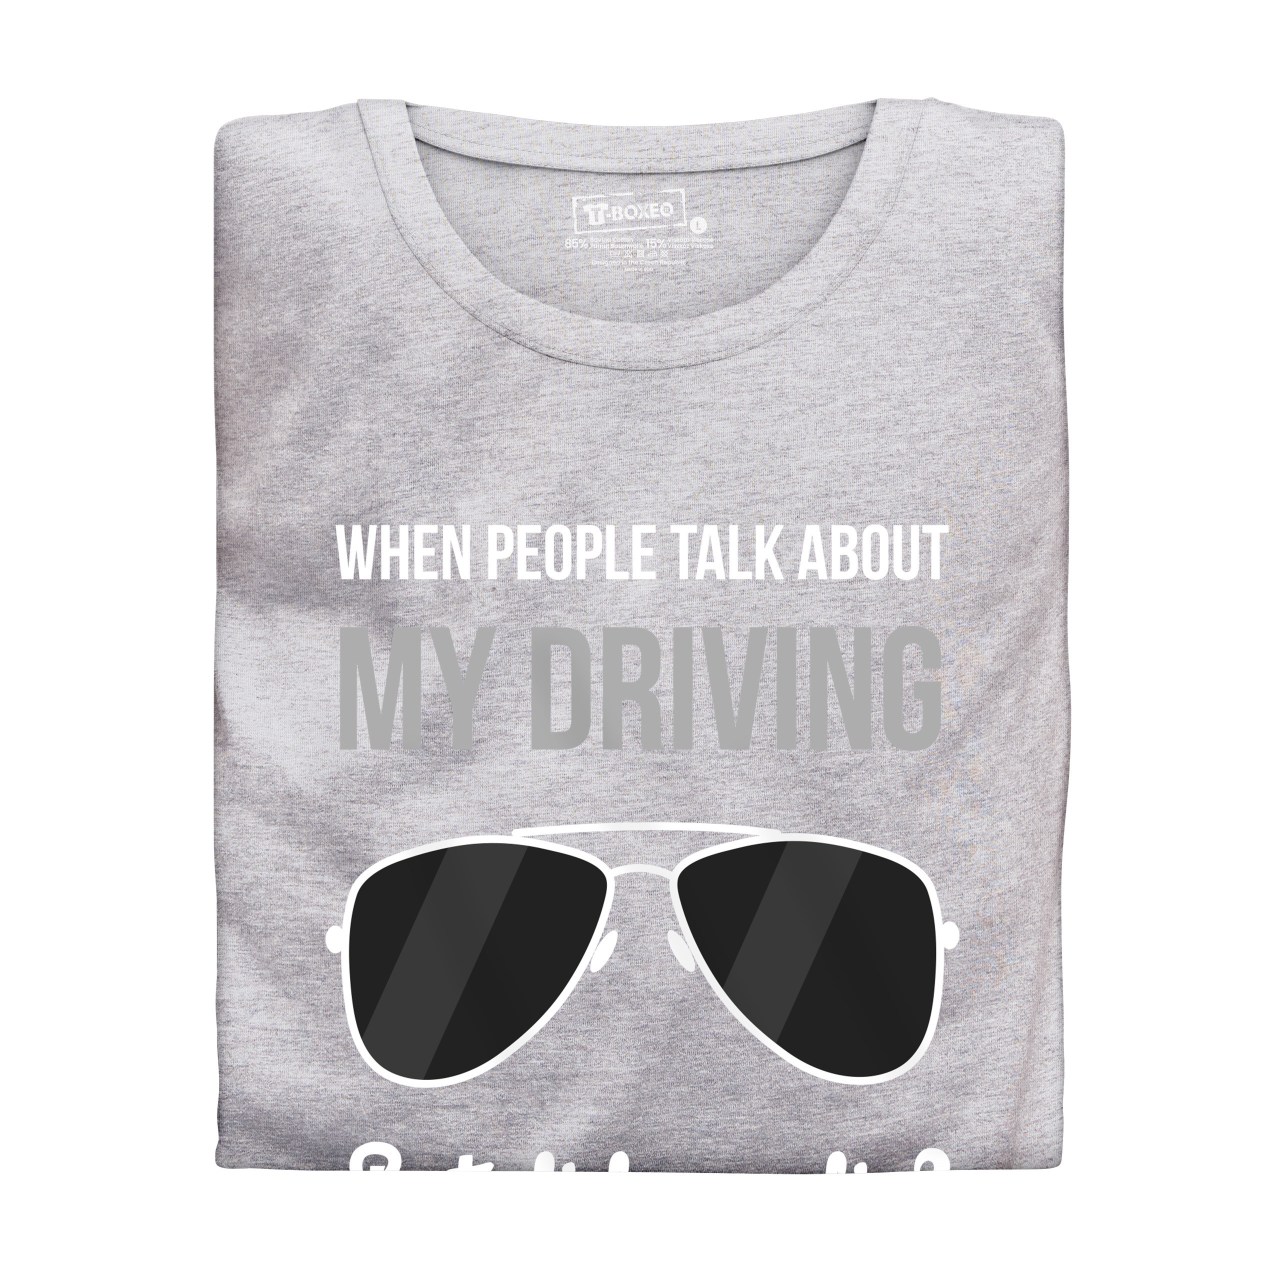 Pánské tričko s potiskem “My driving”